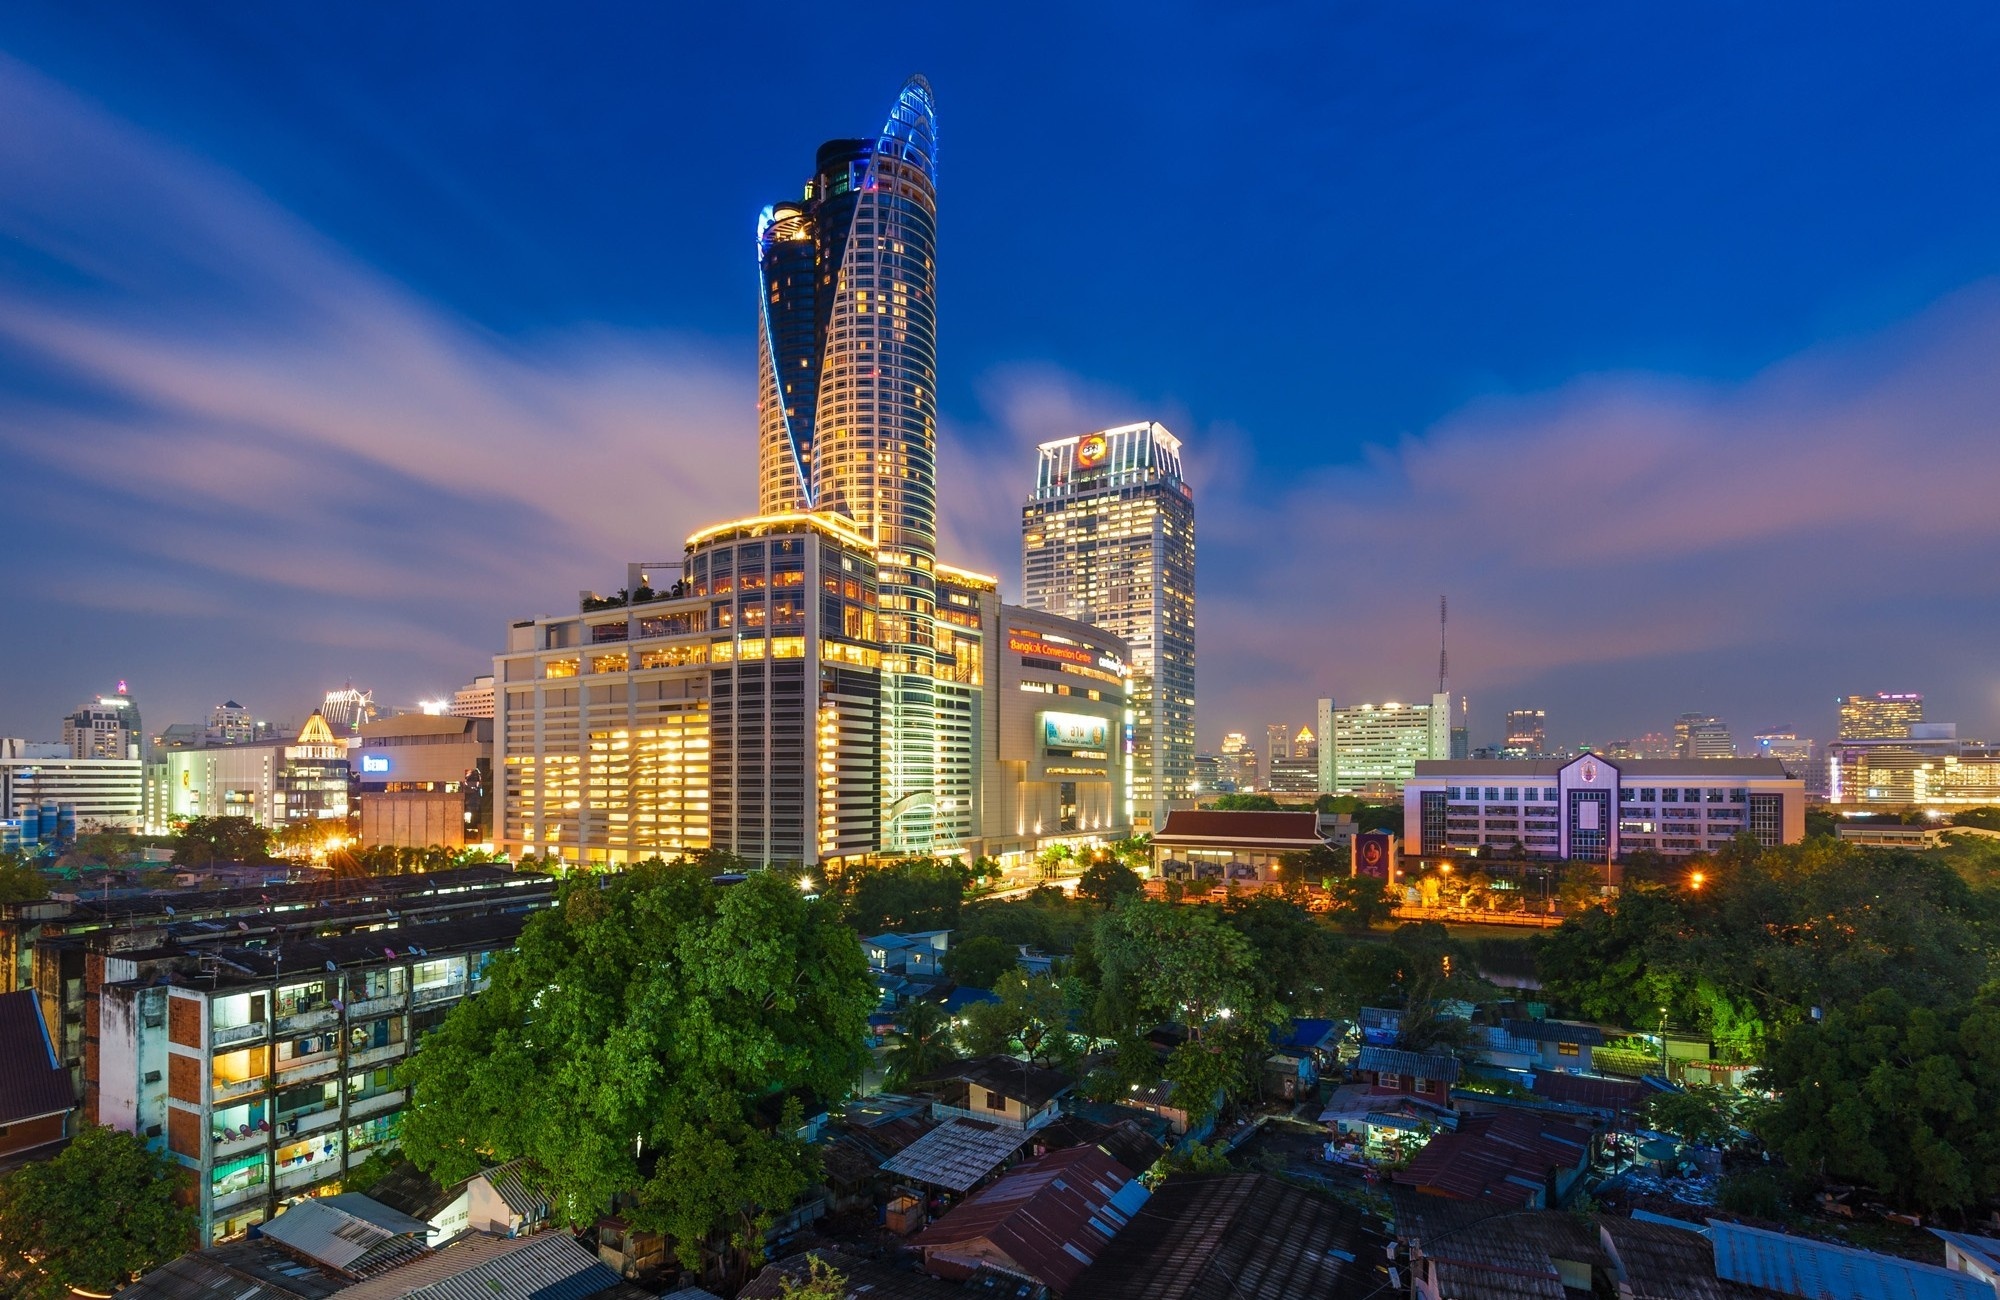 Bangkok: Centara Grand, CentralWorld, Pathumwan. 2000x1300 HD Wallpaper.